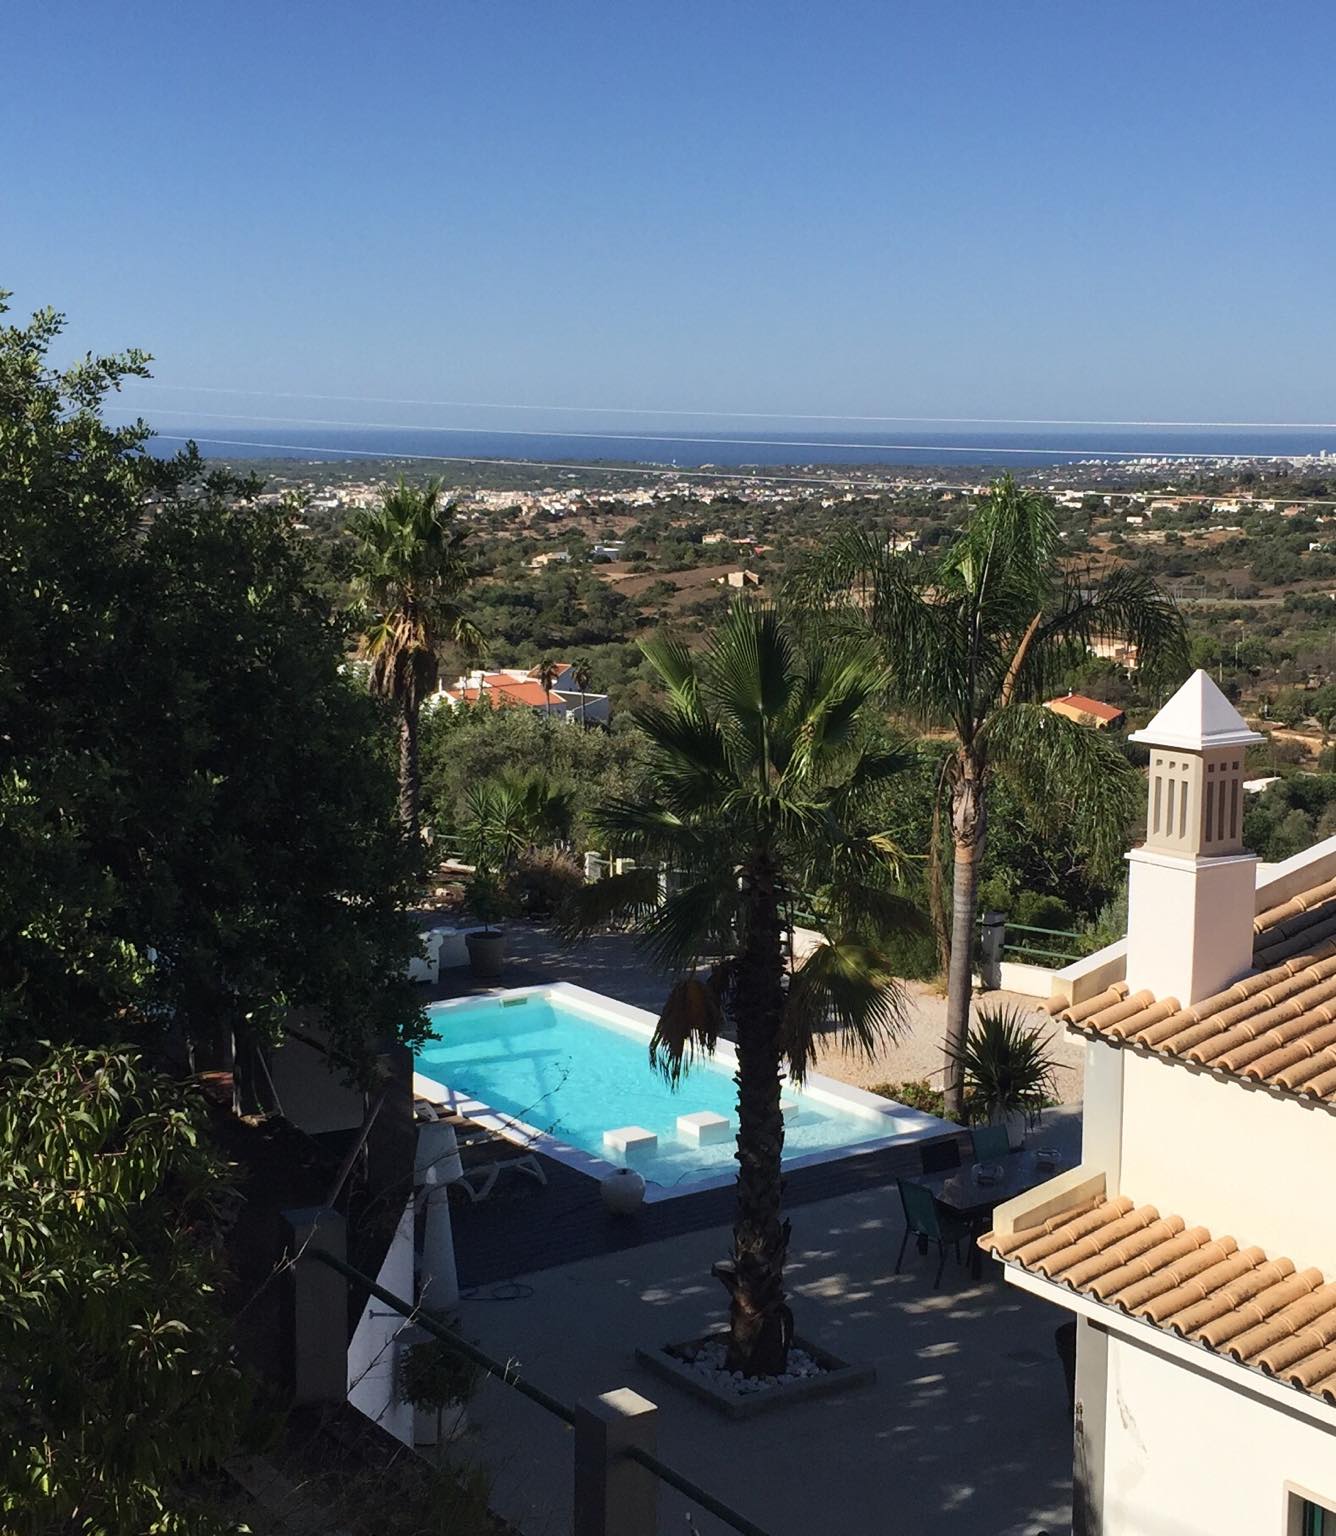 Het uitzicht over het dal en op zee laat zien hoe vrij gelegen vakantieverblijf Algarve ligt.